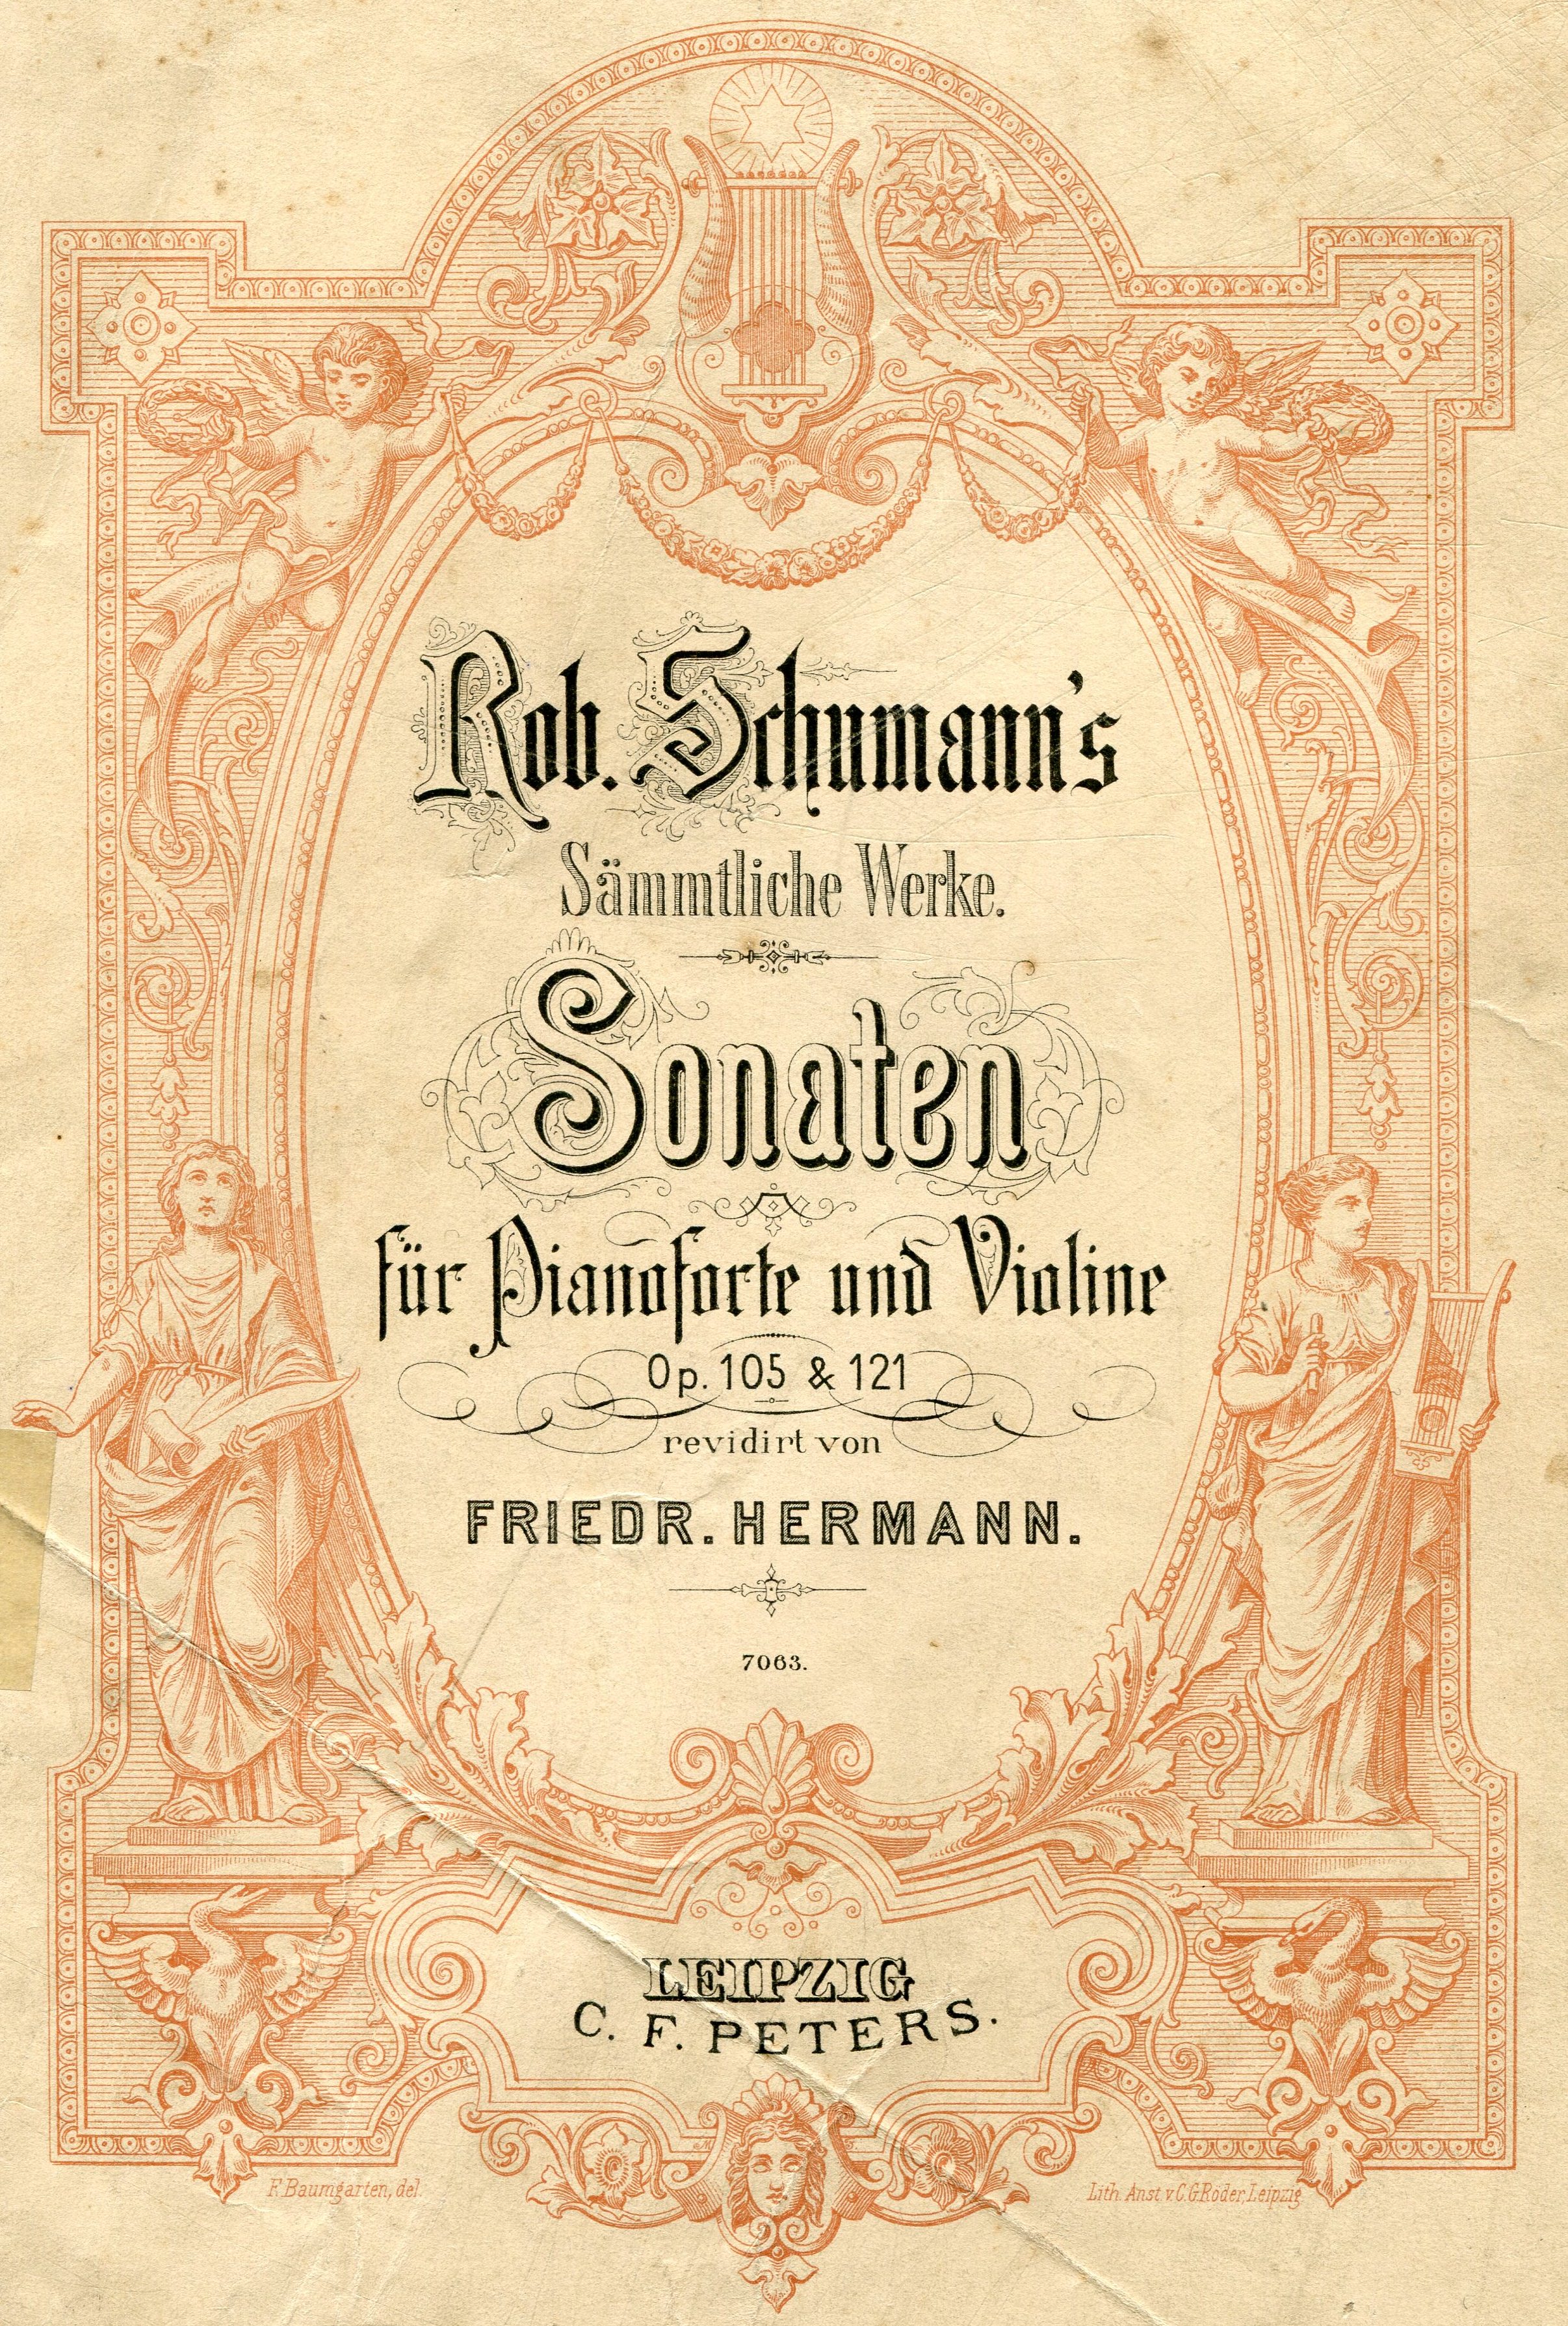 Robert Schumann, Op. 105 et 121, page de couverture de la partition, IMSLP, cliquer pour une vue agrandie